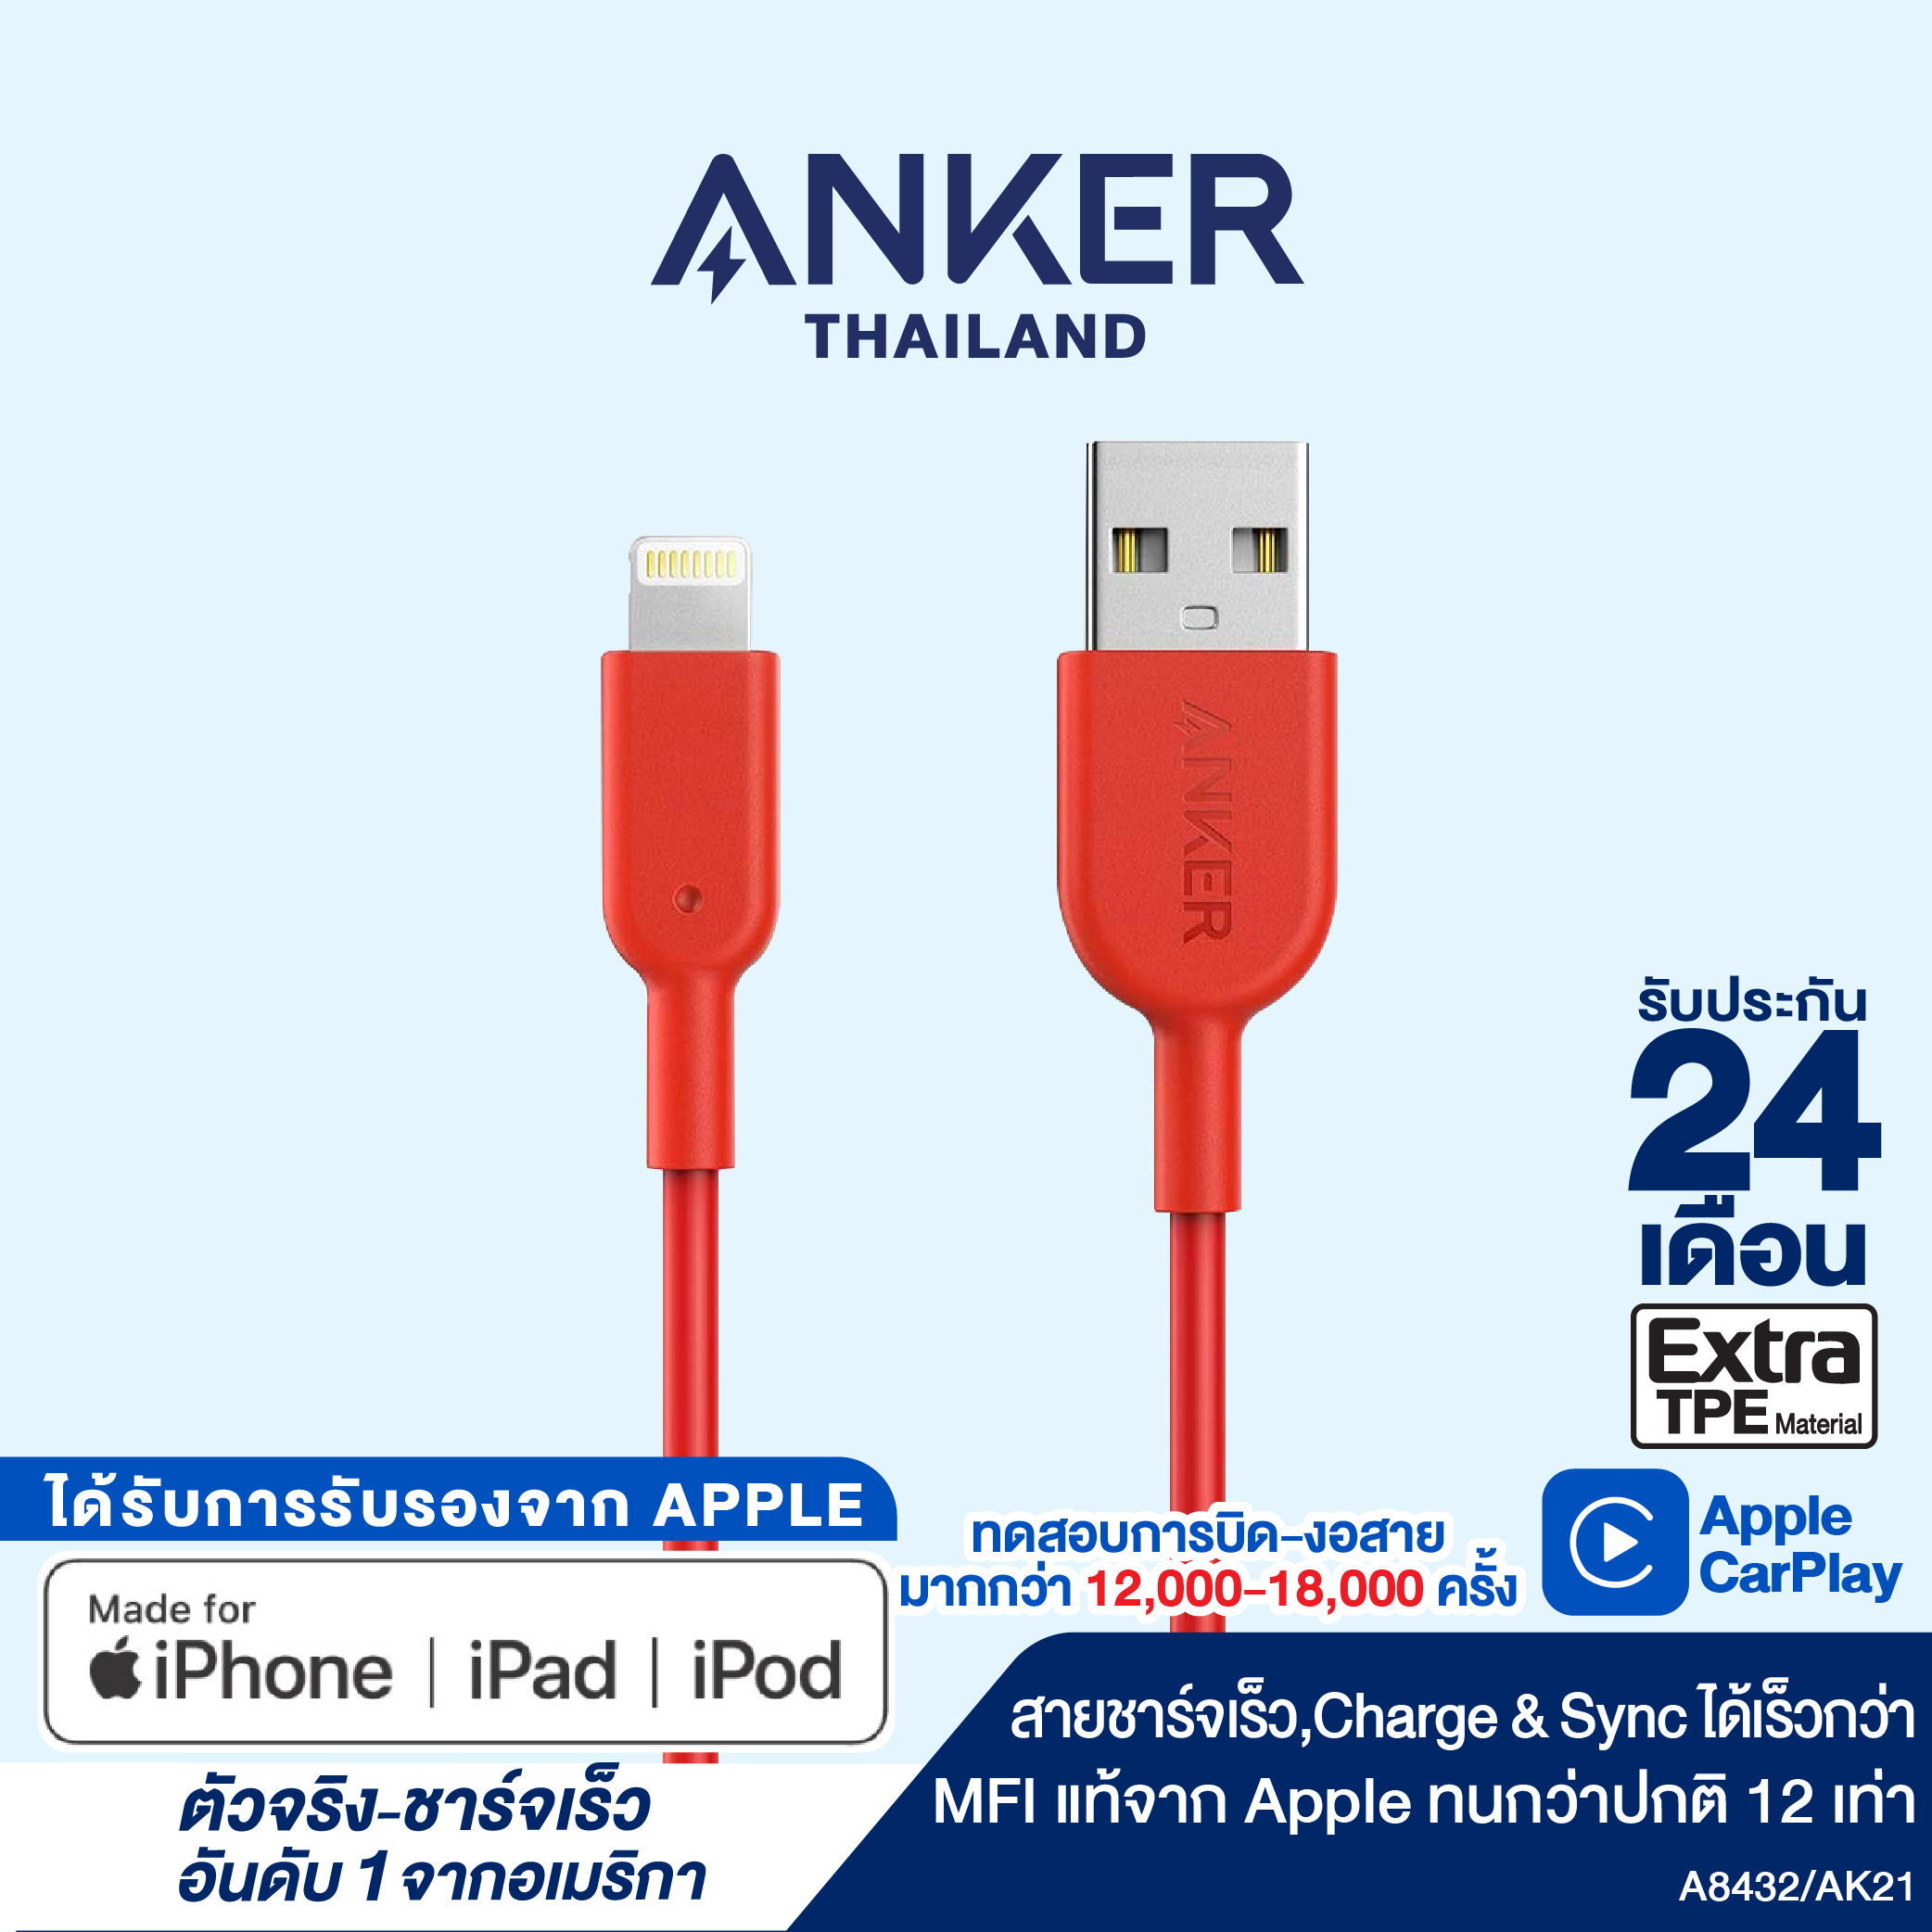 สายชาร์จ Anker Powerline II with lightning connector 90cm (3ft) สายชาร์จไอโฟน สายแท้ ชาร์จเร็ว ได้รับมาตรฐาน MFi จาก Apple สายหุ้มด้วยวัสดุไฟเบอร์กันกระสุน แข็งแรงทนทาน